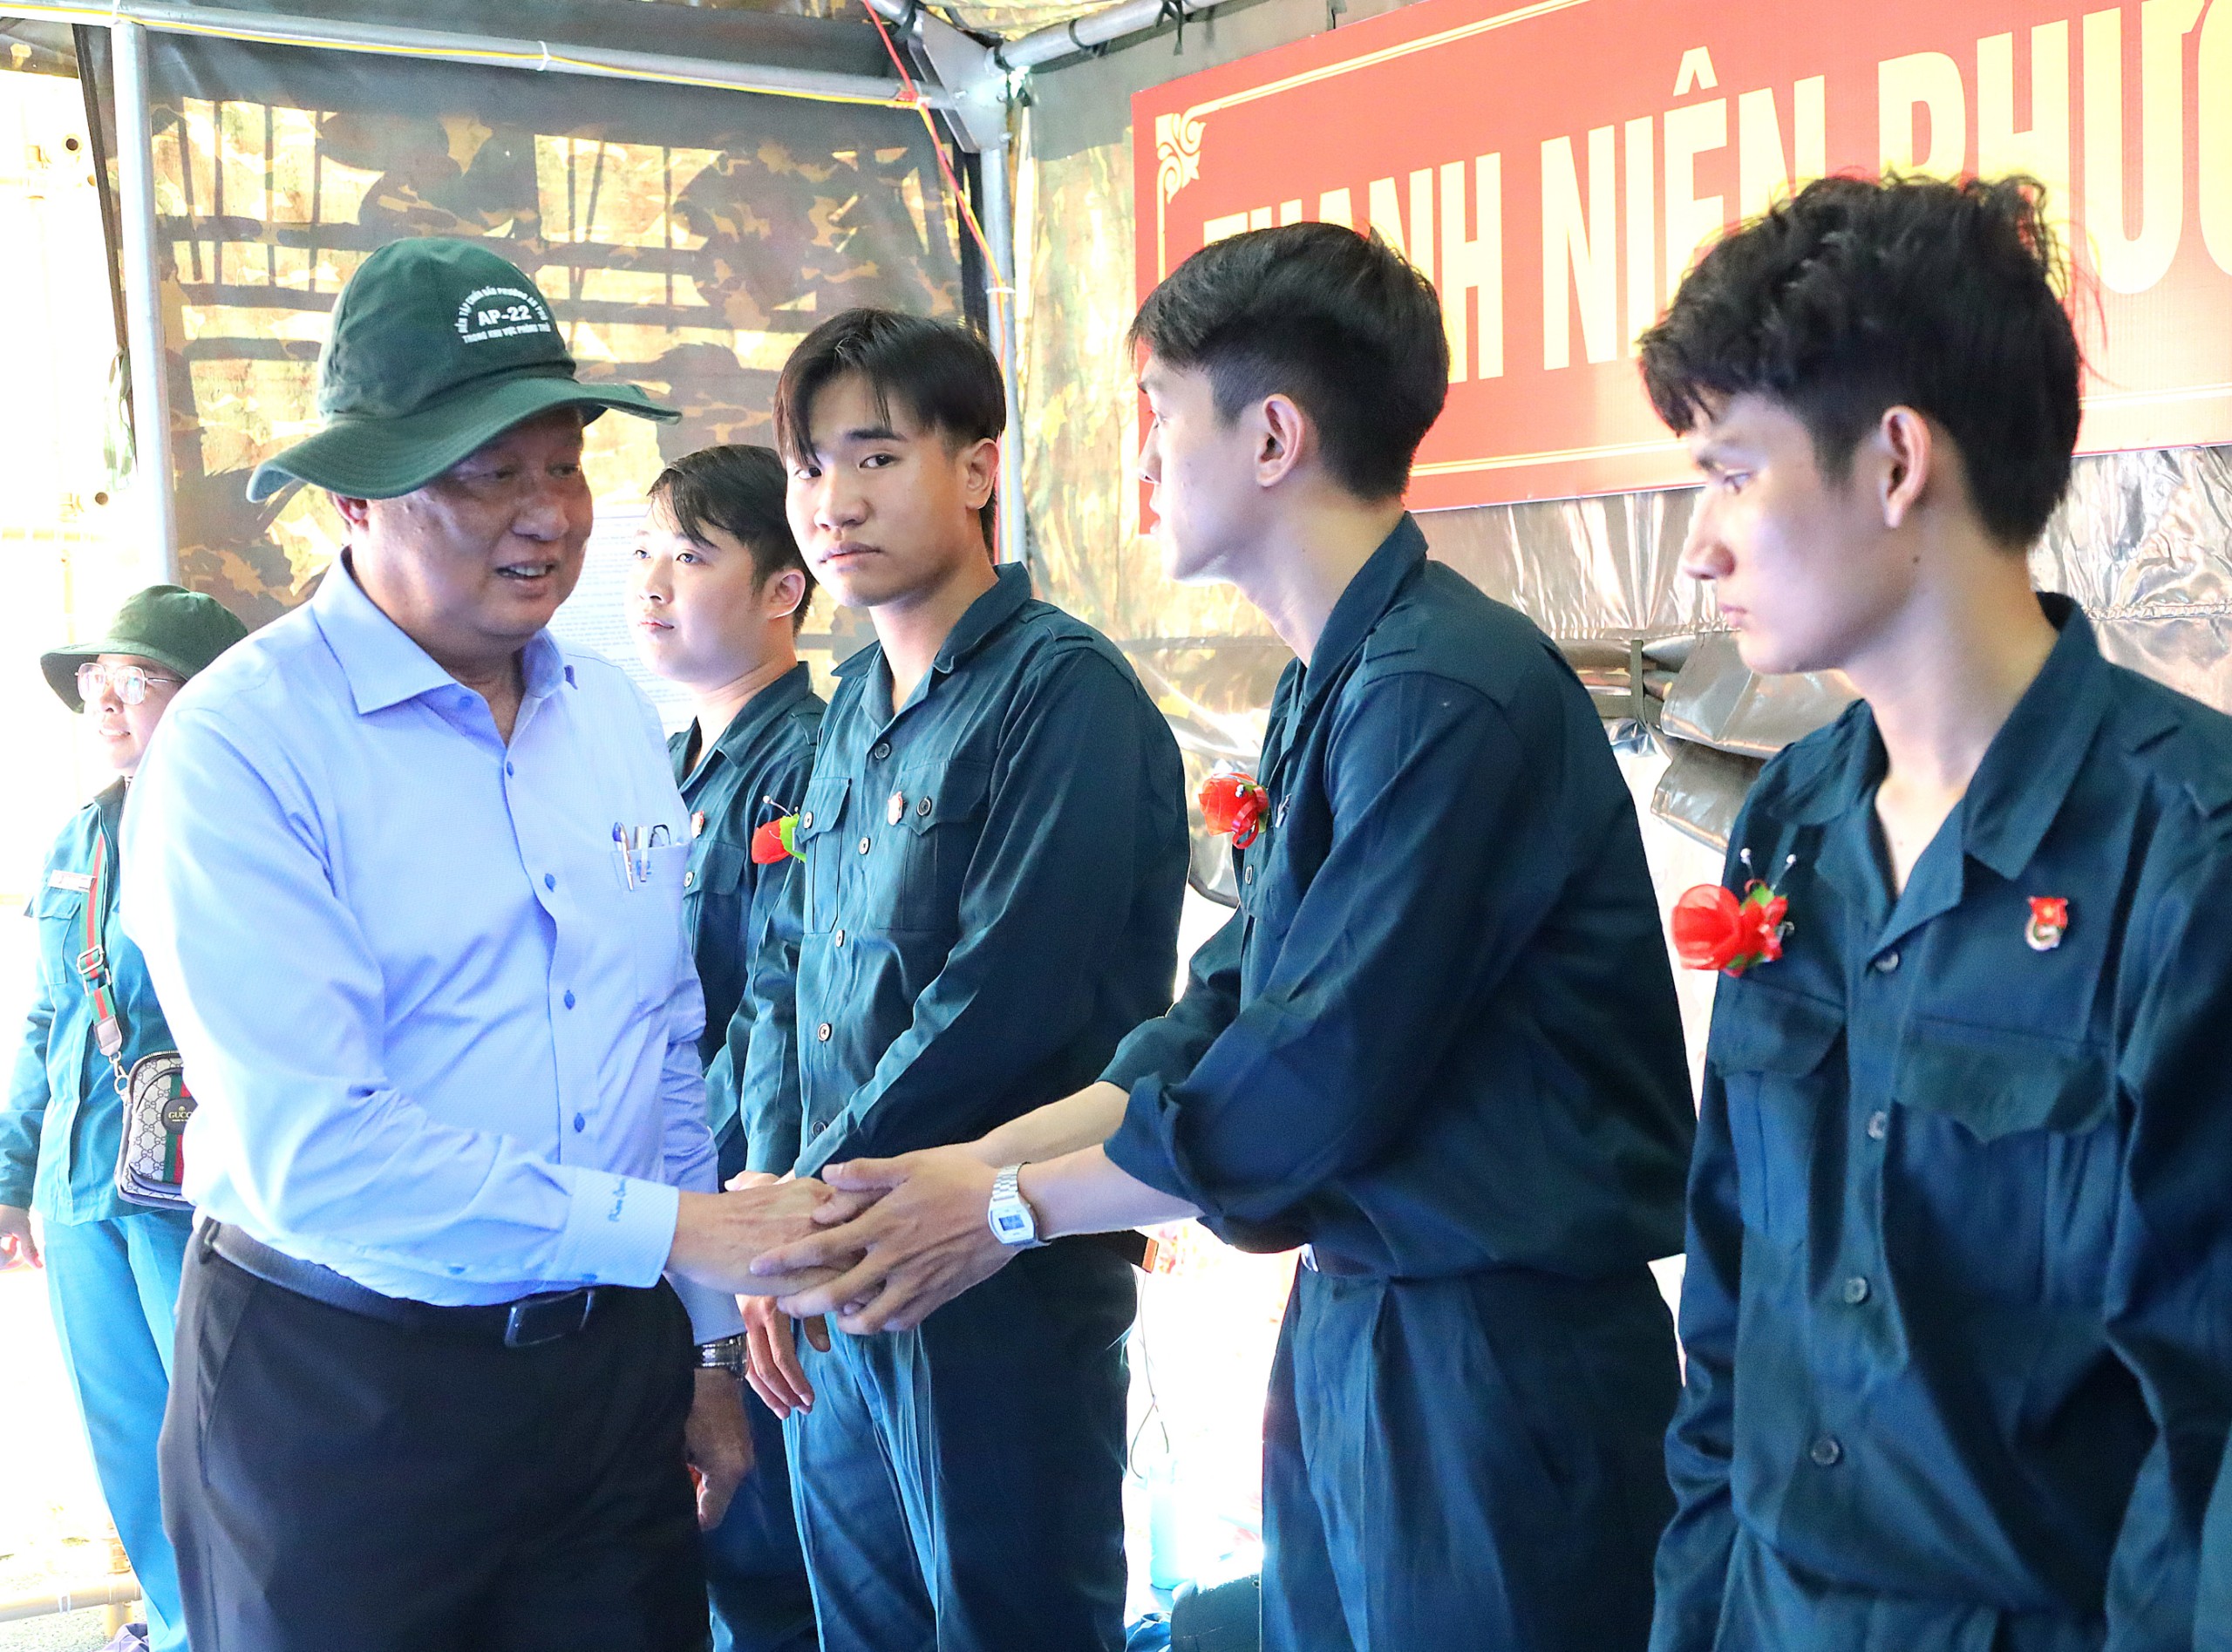 Ông Phạm Văn Hiểu - Phó Bí thư Thường trực Thành ủy, Chủ tịch HÐND TP. Cần Thơ động viên các thanh niên.